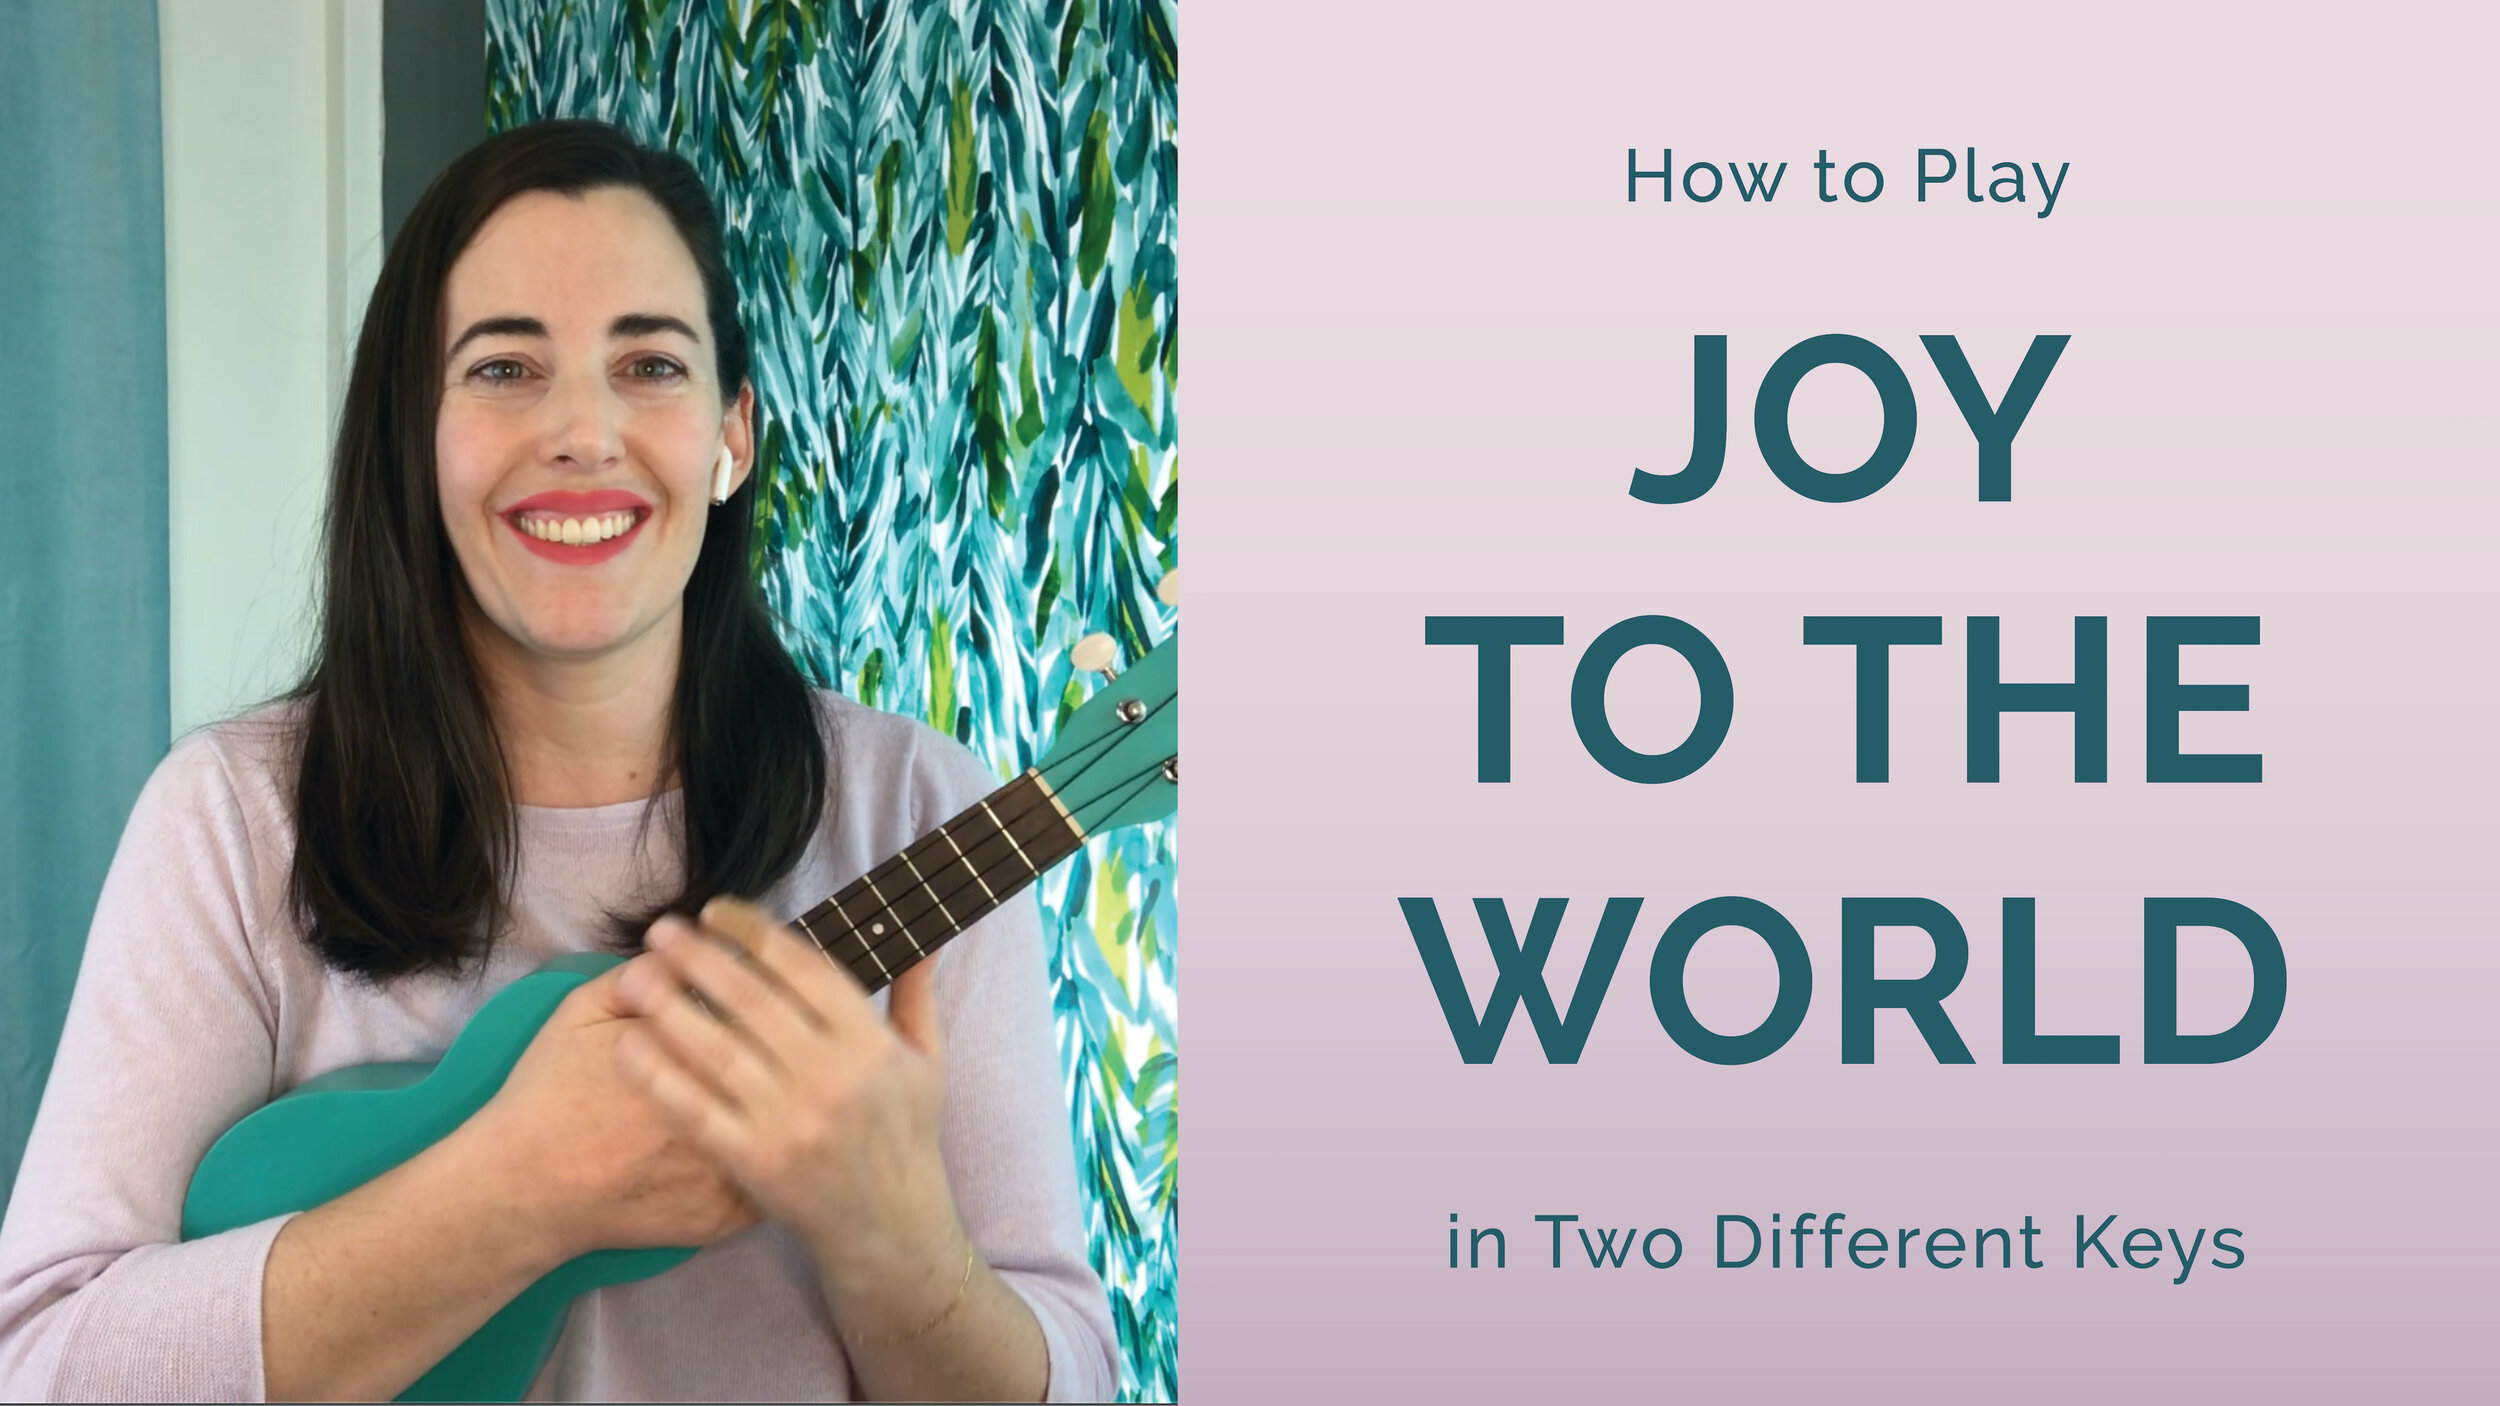 "Joy" in Two Different Keys